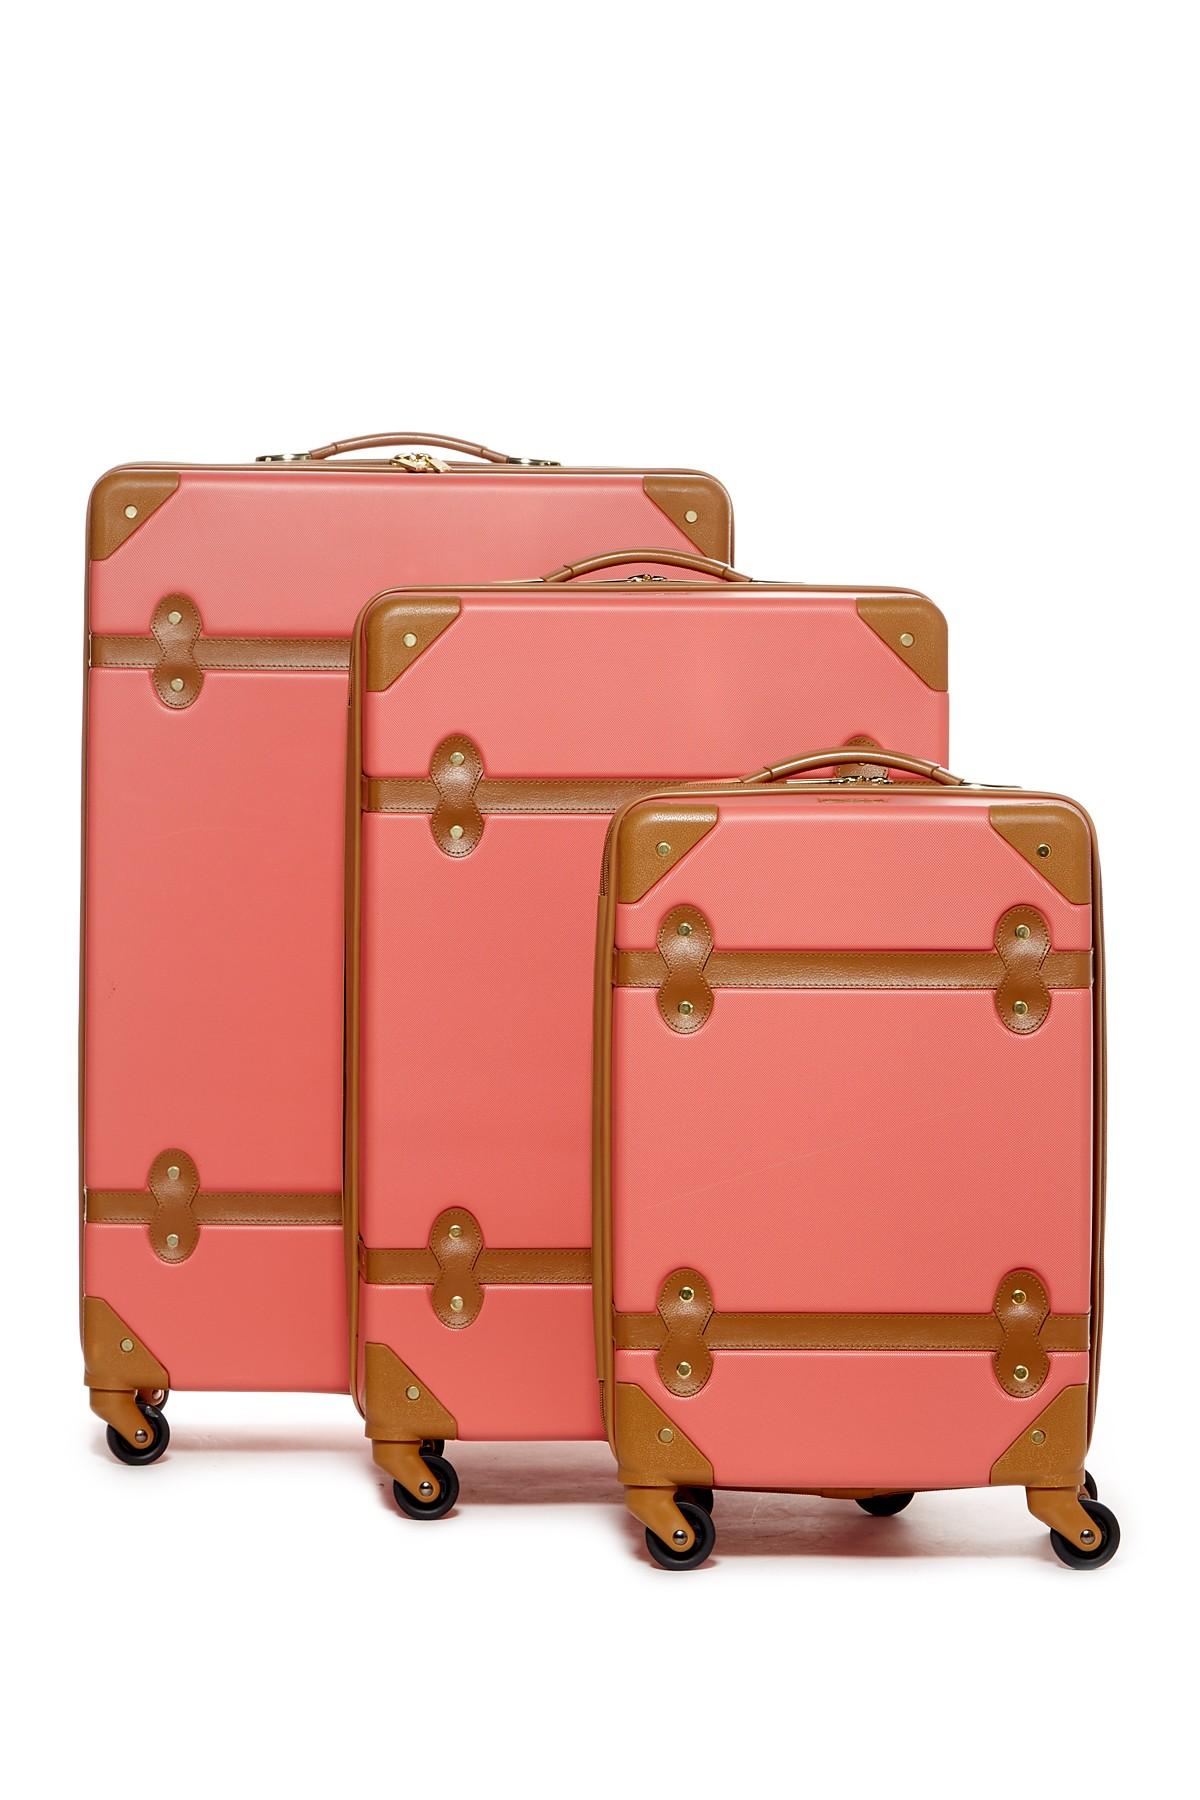 Diane Von Furstenberg Designer Luggage for Sale in Sun City, AZ